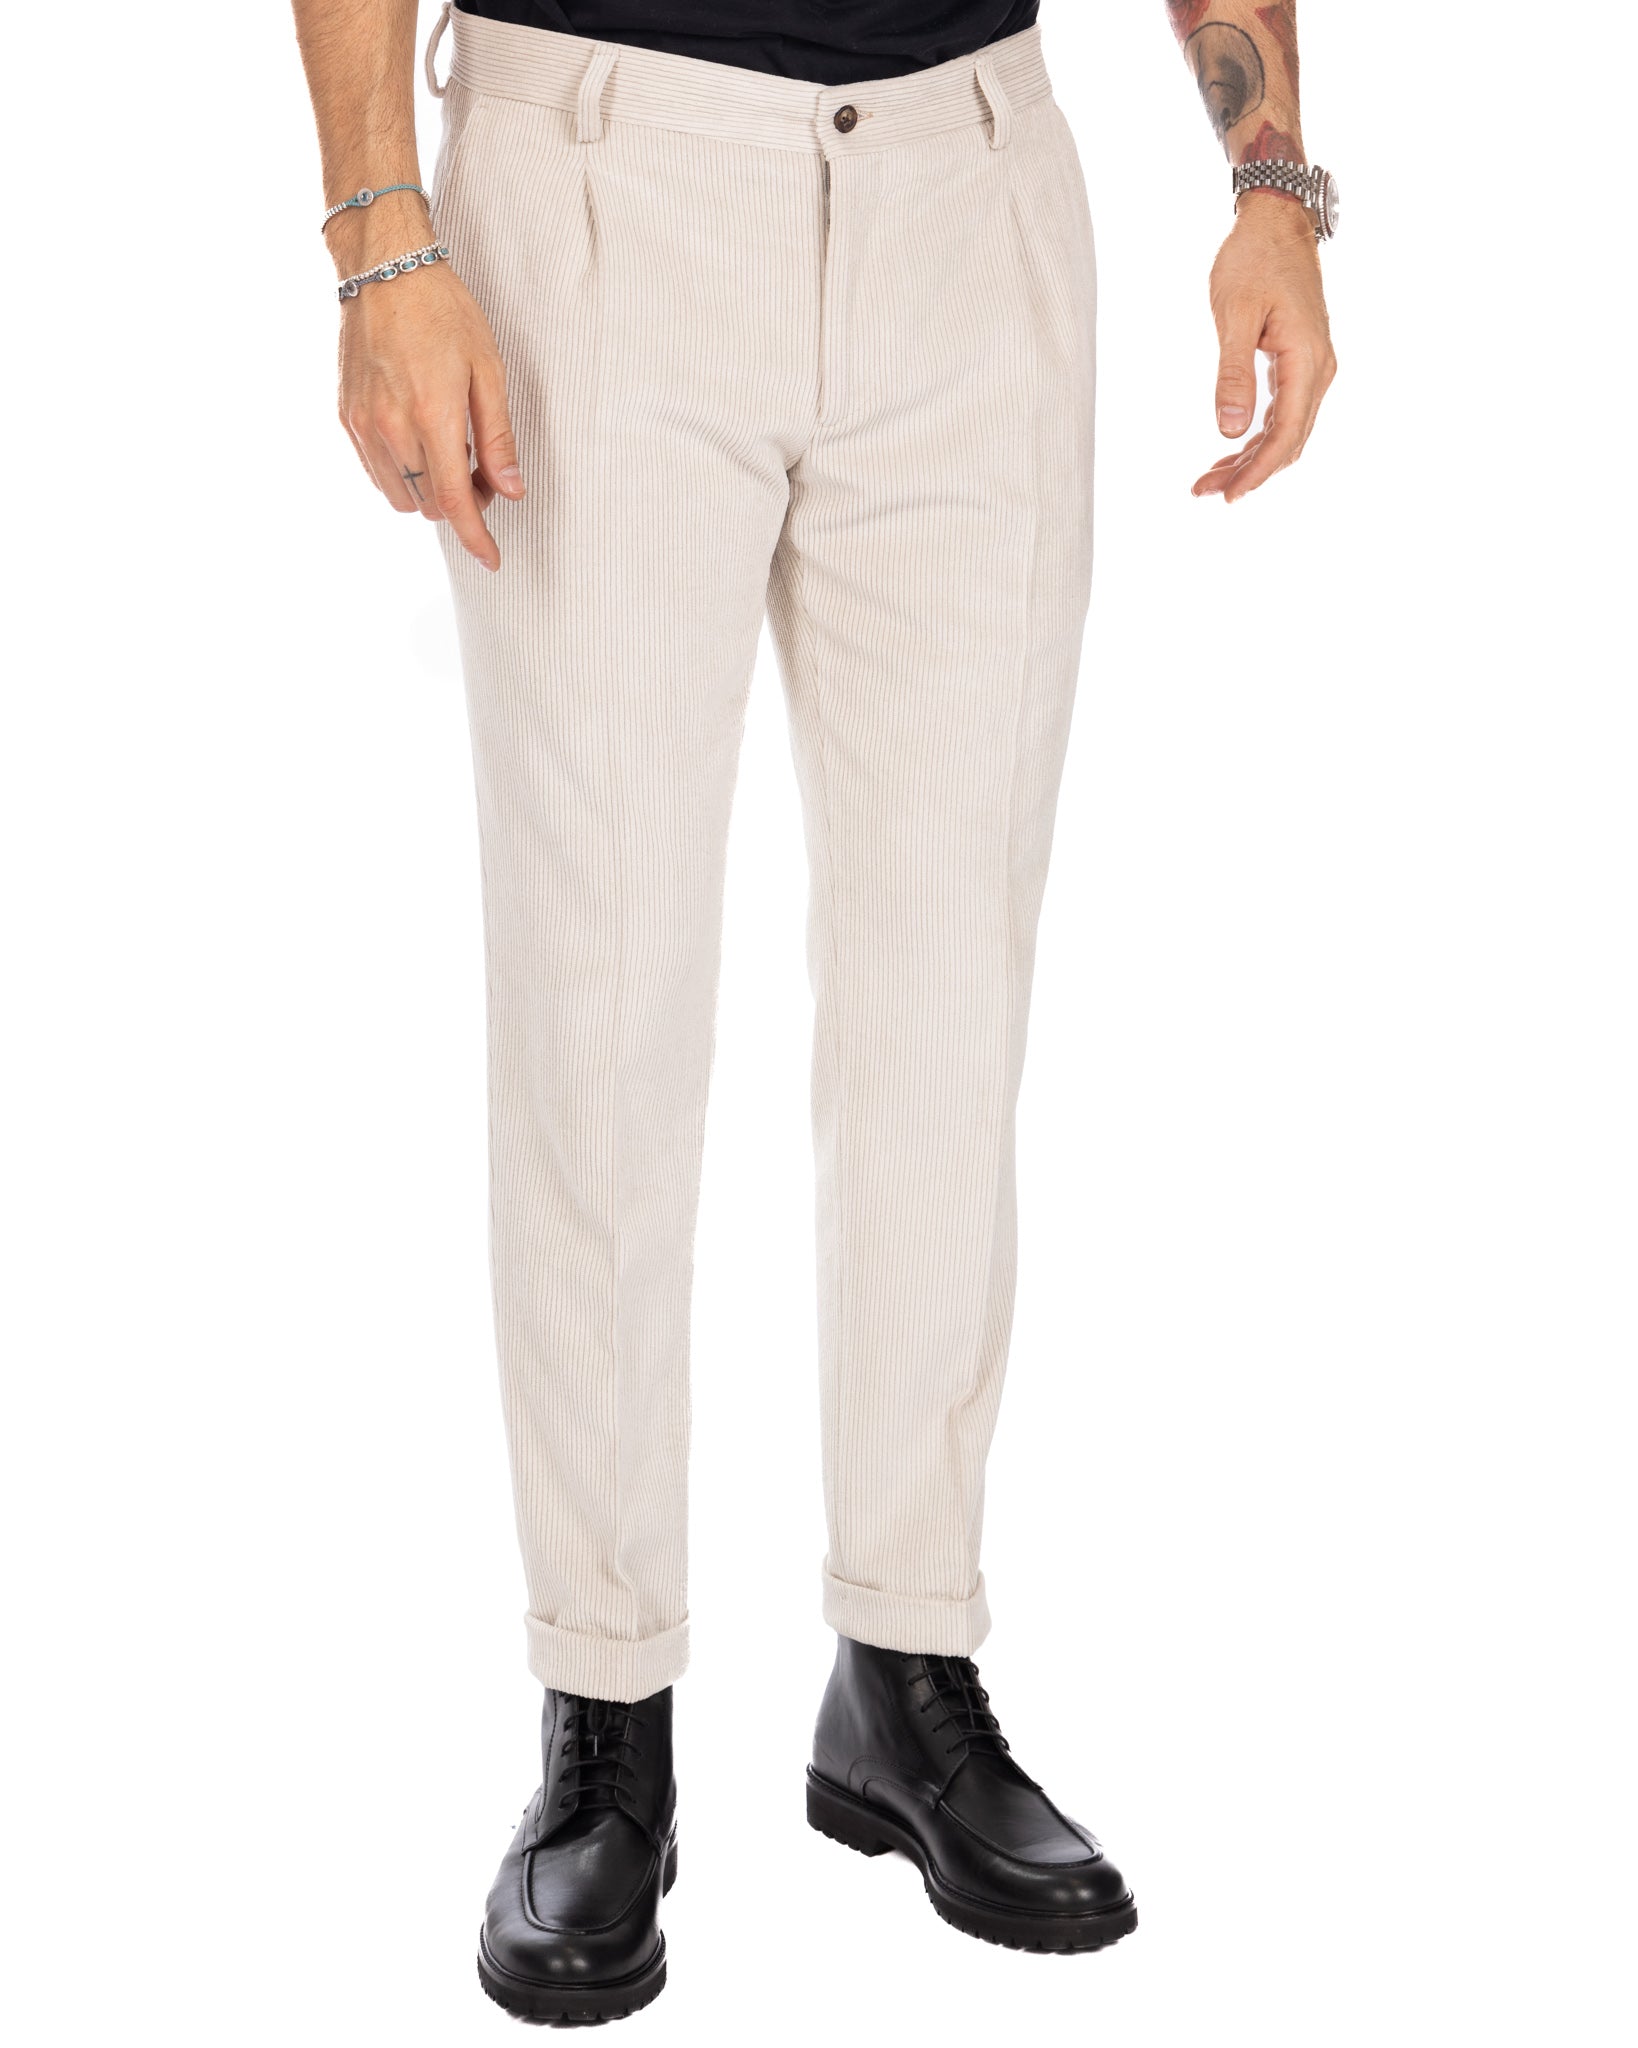 Lodi - cream trousers with velvet pleats 